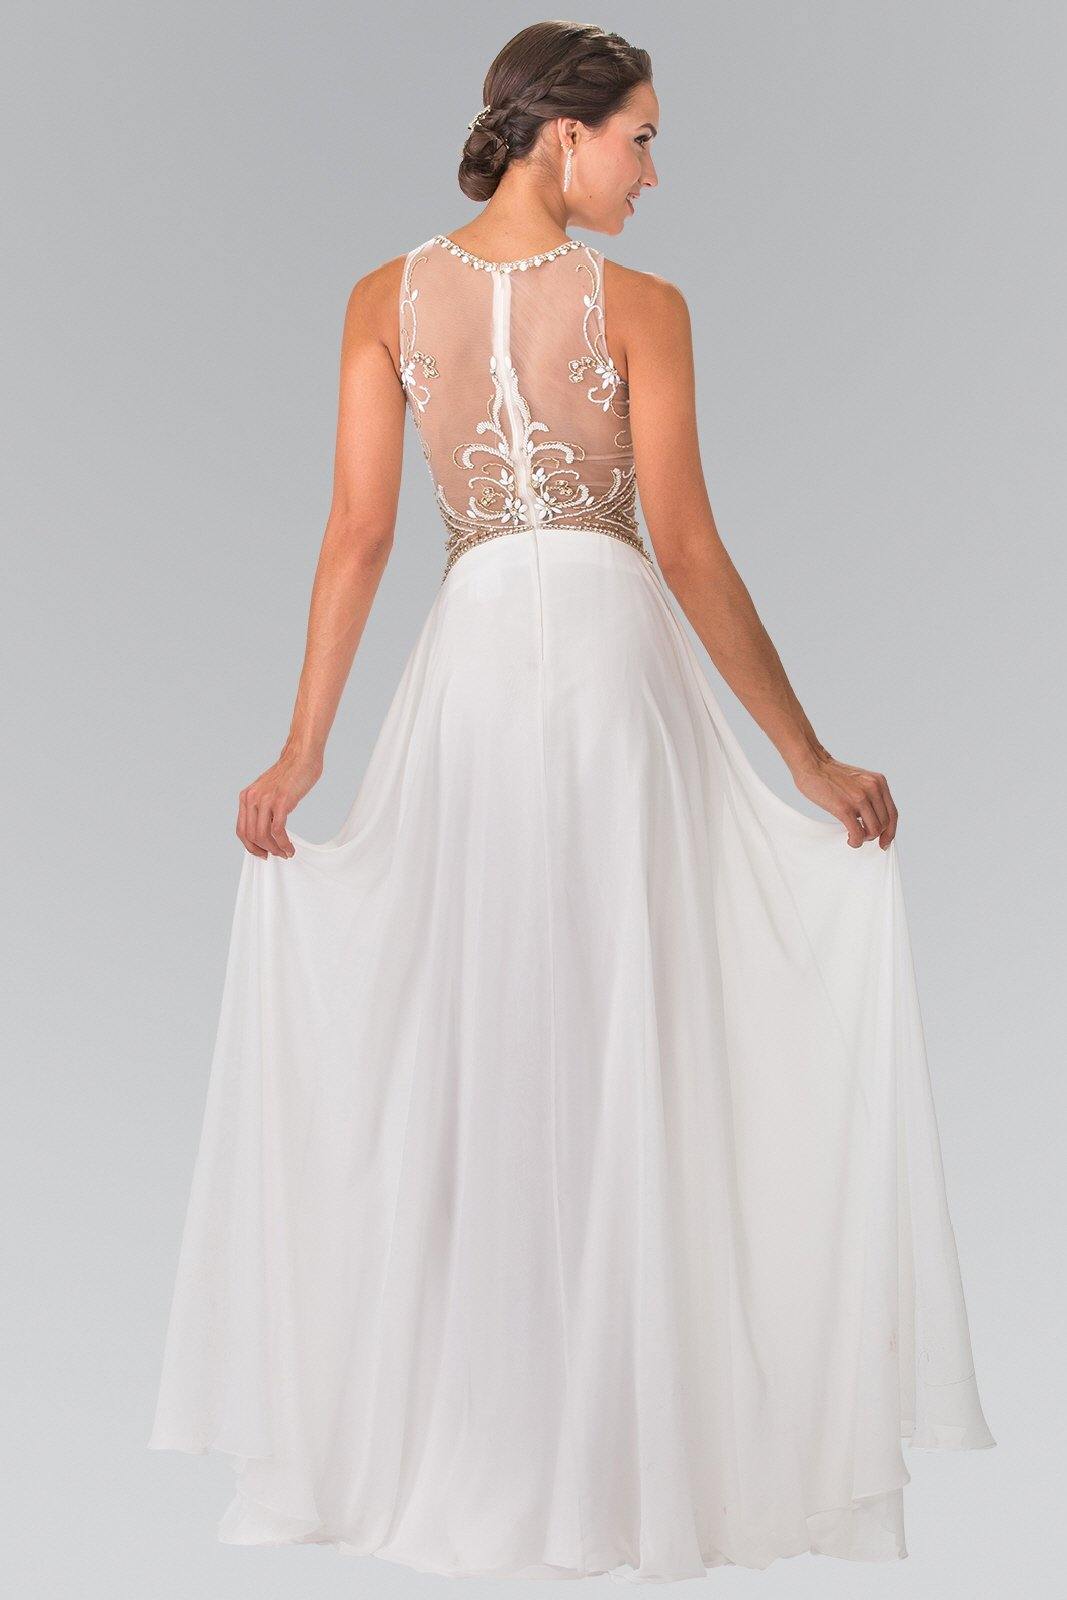 Beads Embellished Bodice Prom Long Dress - The Dress Outlet Elizabeth K